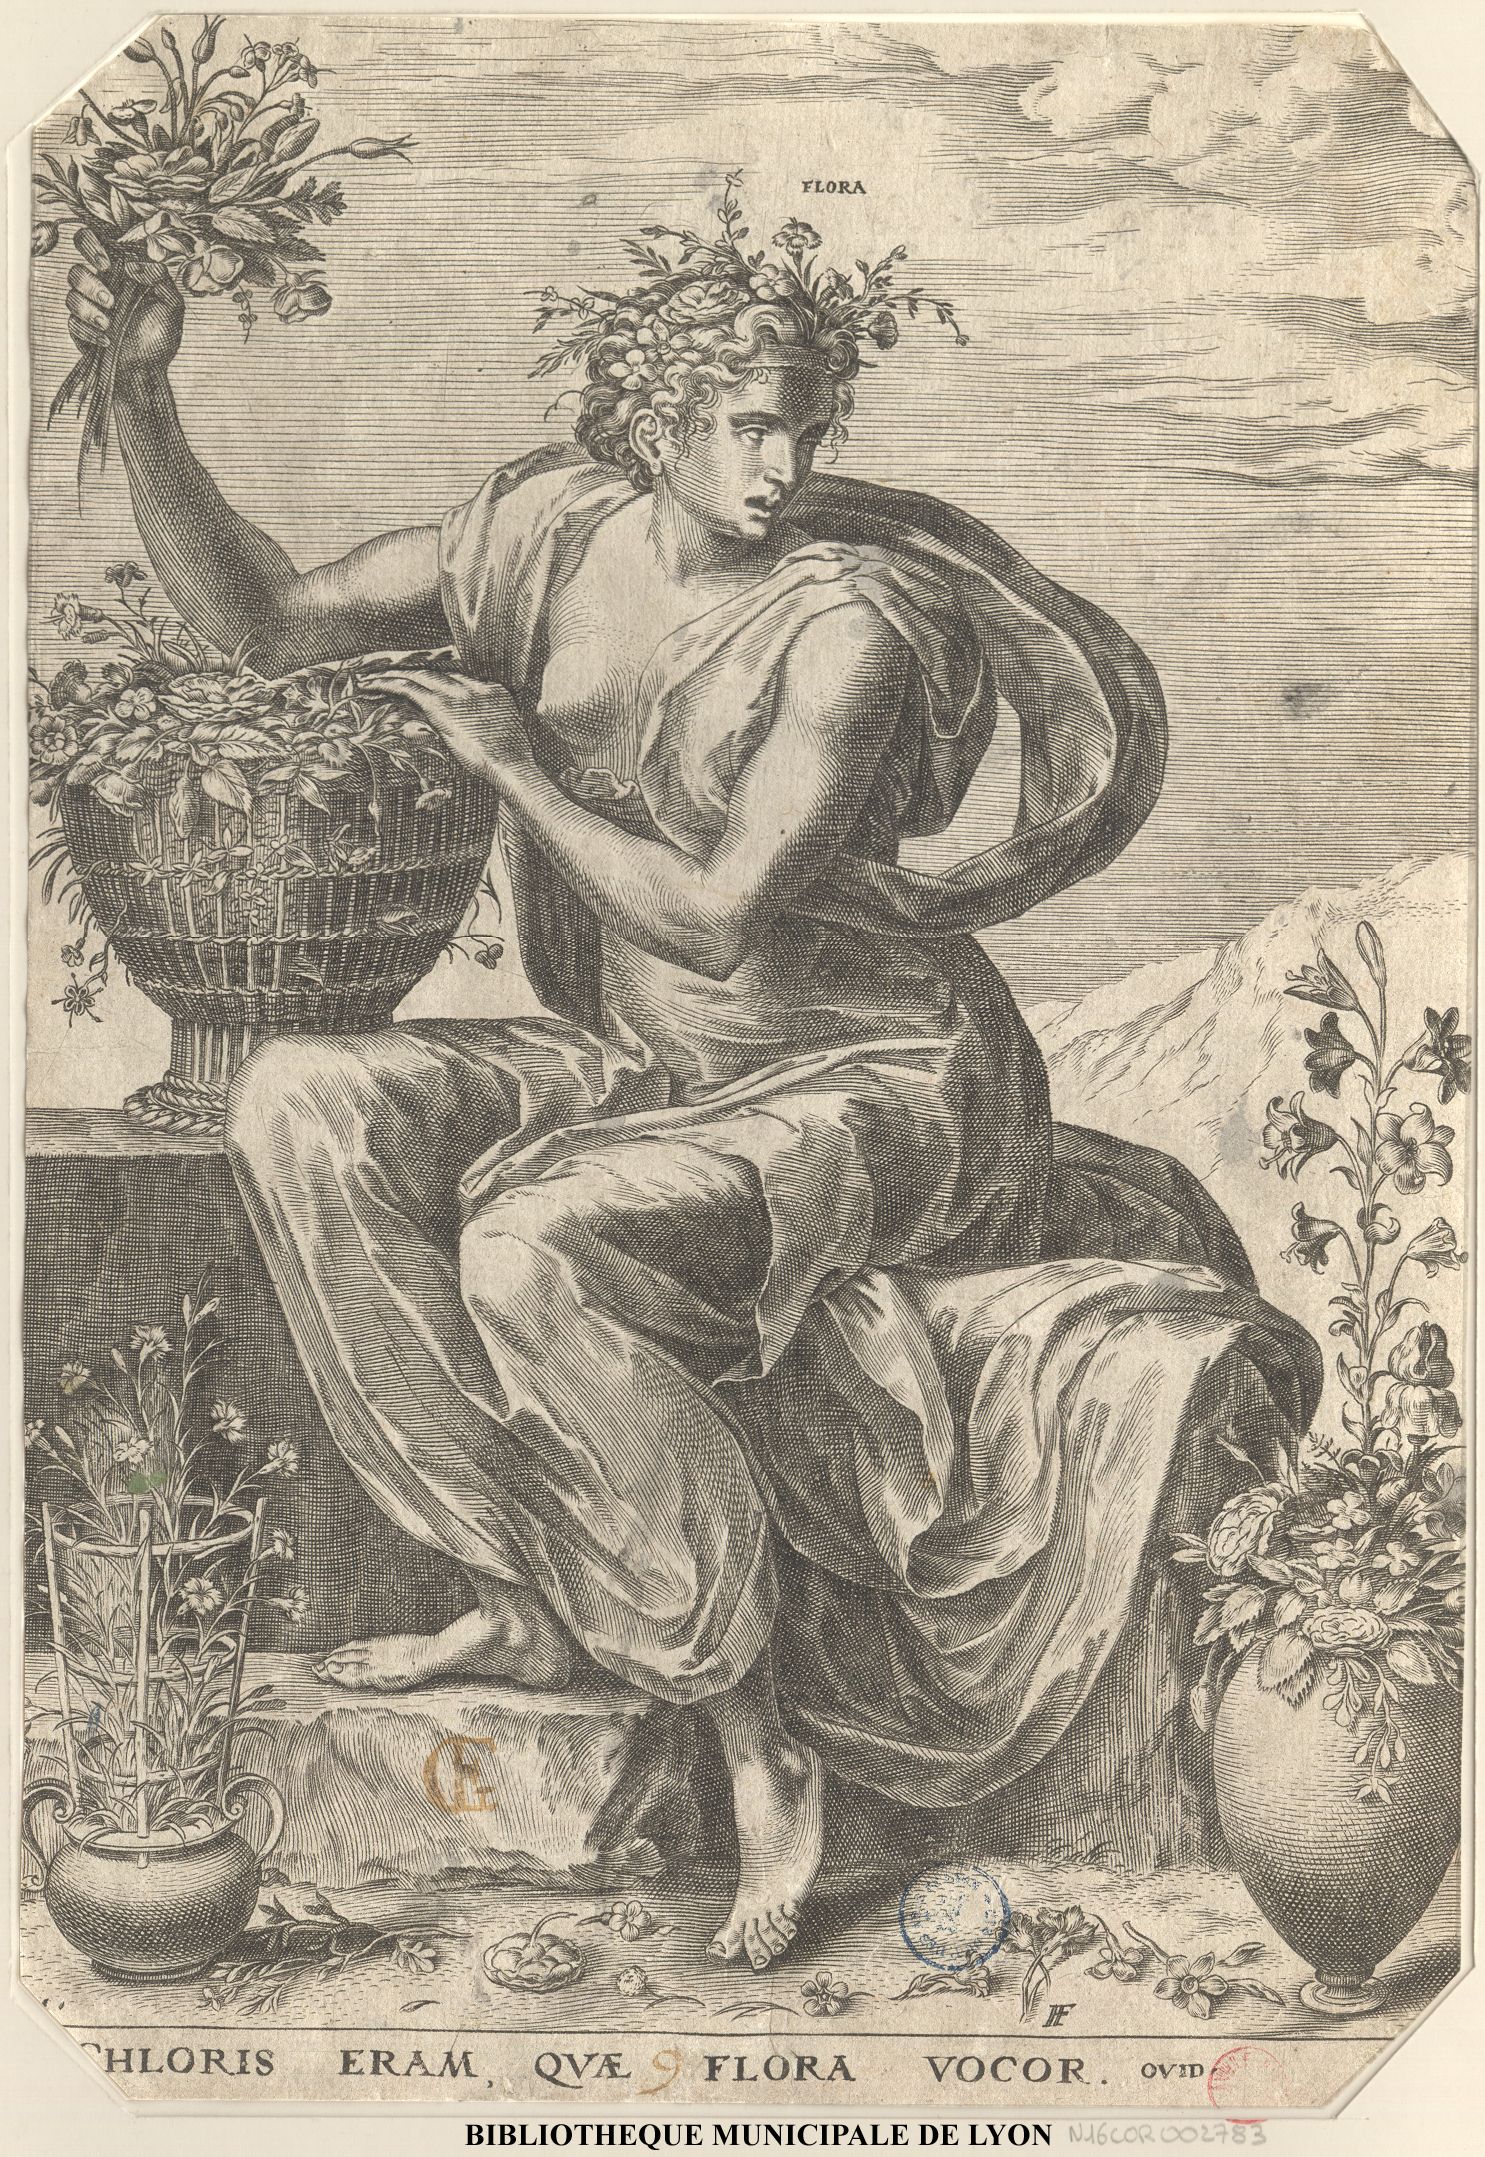 Flore, tirée d'un recueil de 8 estampes dur les déesses;  par Cort, Cornelis, 1533?-1578
Floris, Frans, 1516-1570
Bibliothèque municipale de Lyon